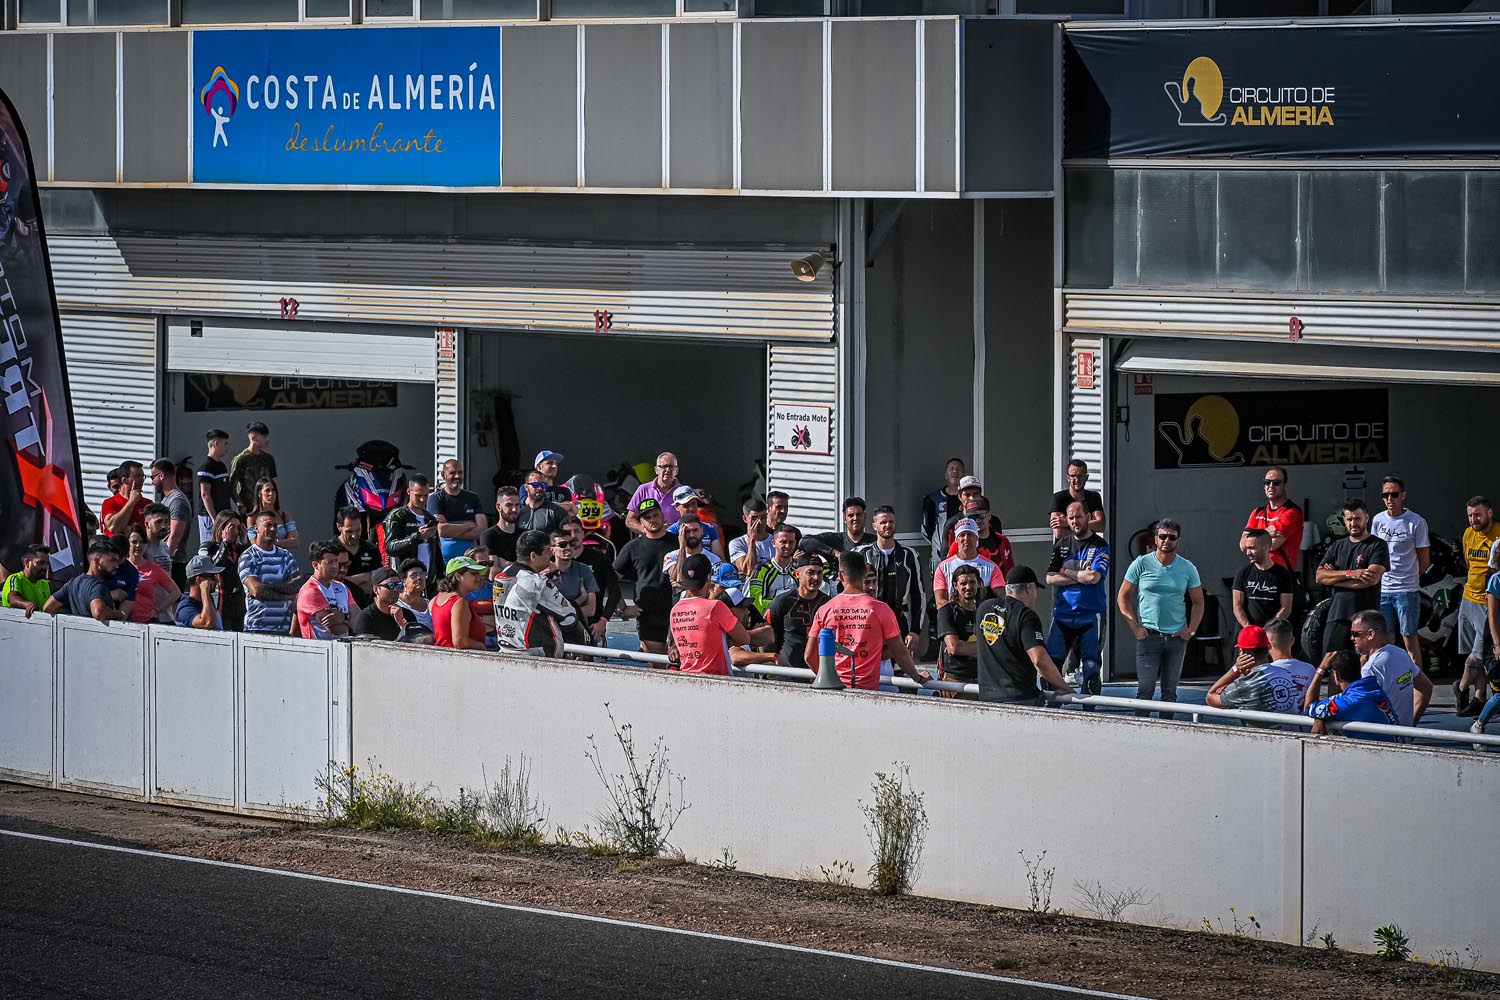 Circuito de Almería 28 Mayo 2022 - Motor Extremo